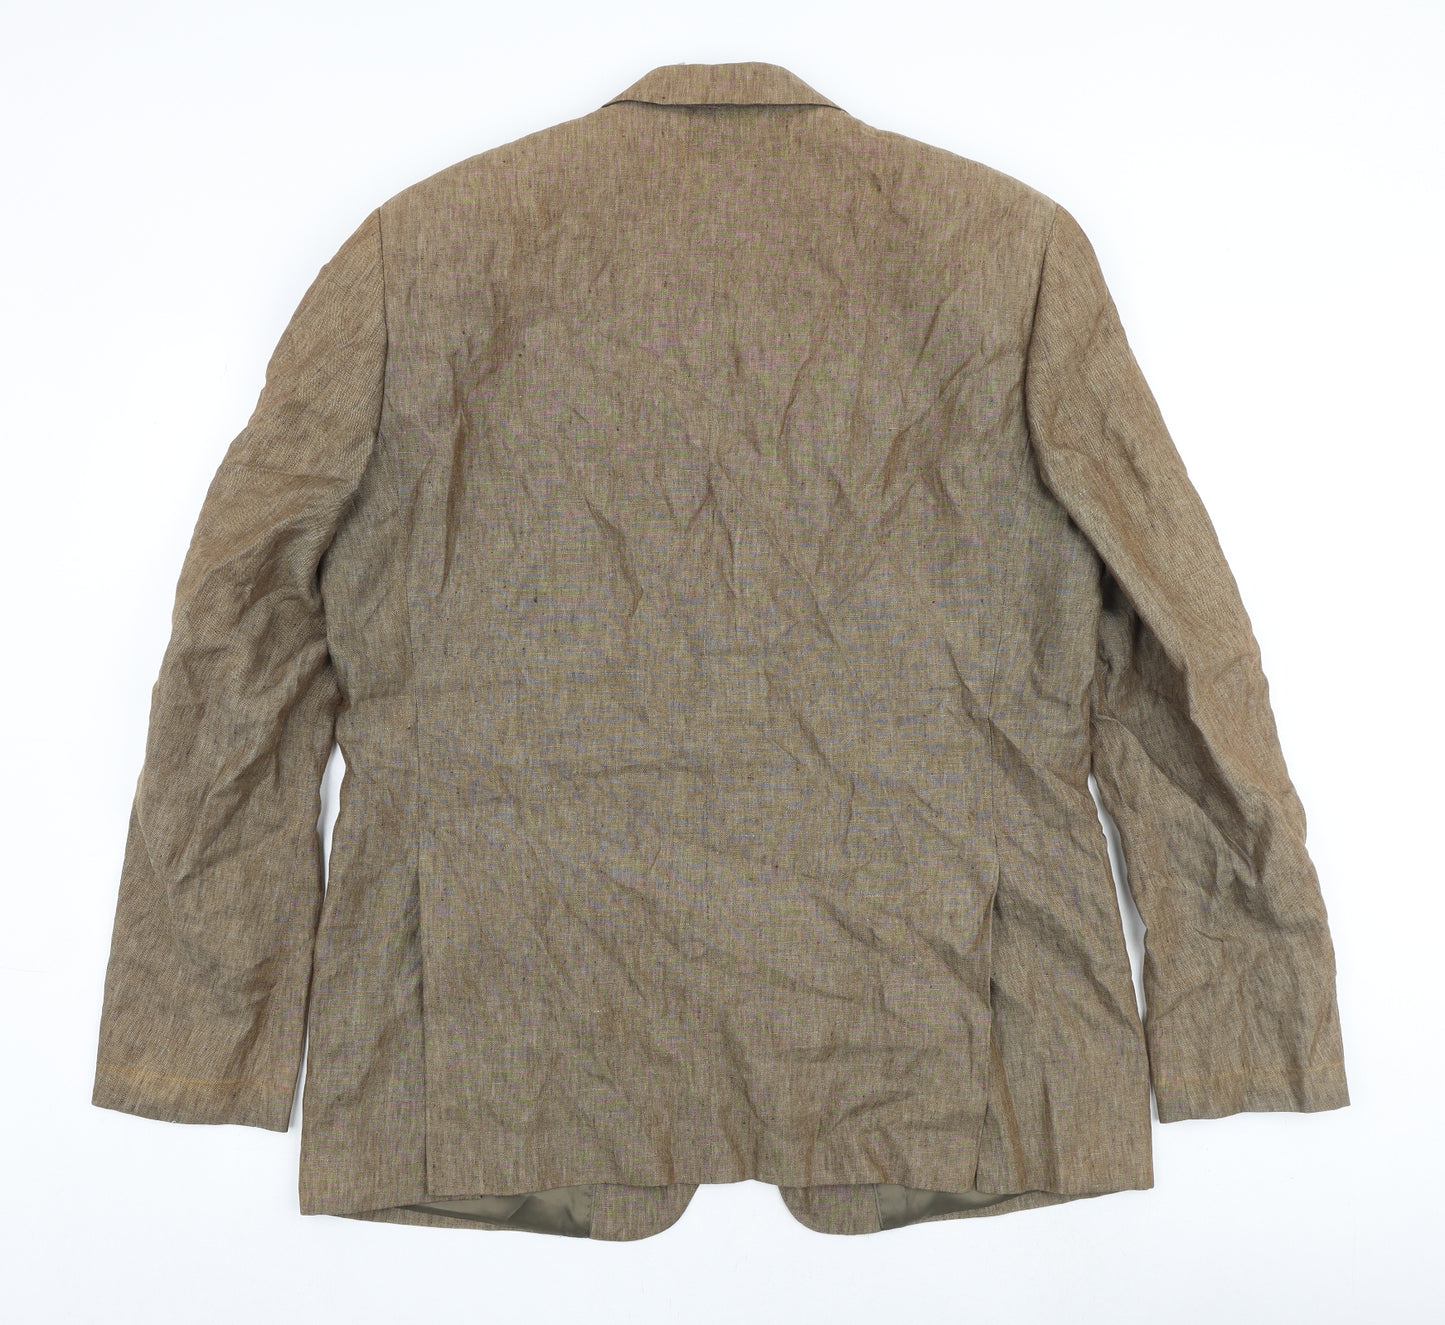 Blazer Mens Brown Linen Jacket Blazer Size 44 Regular